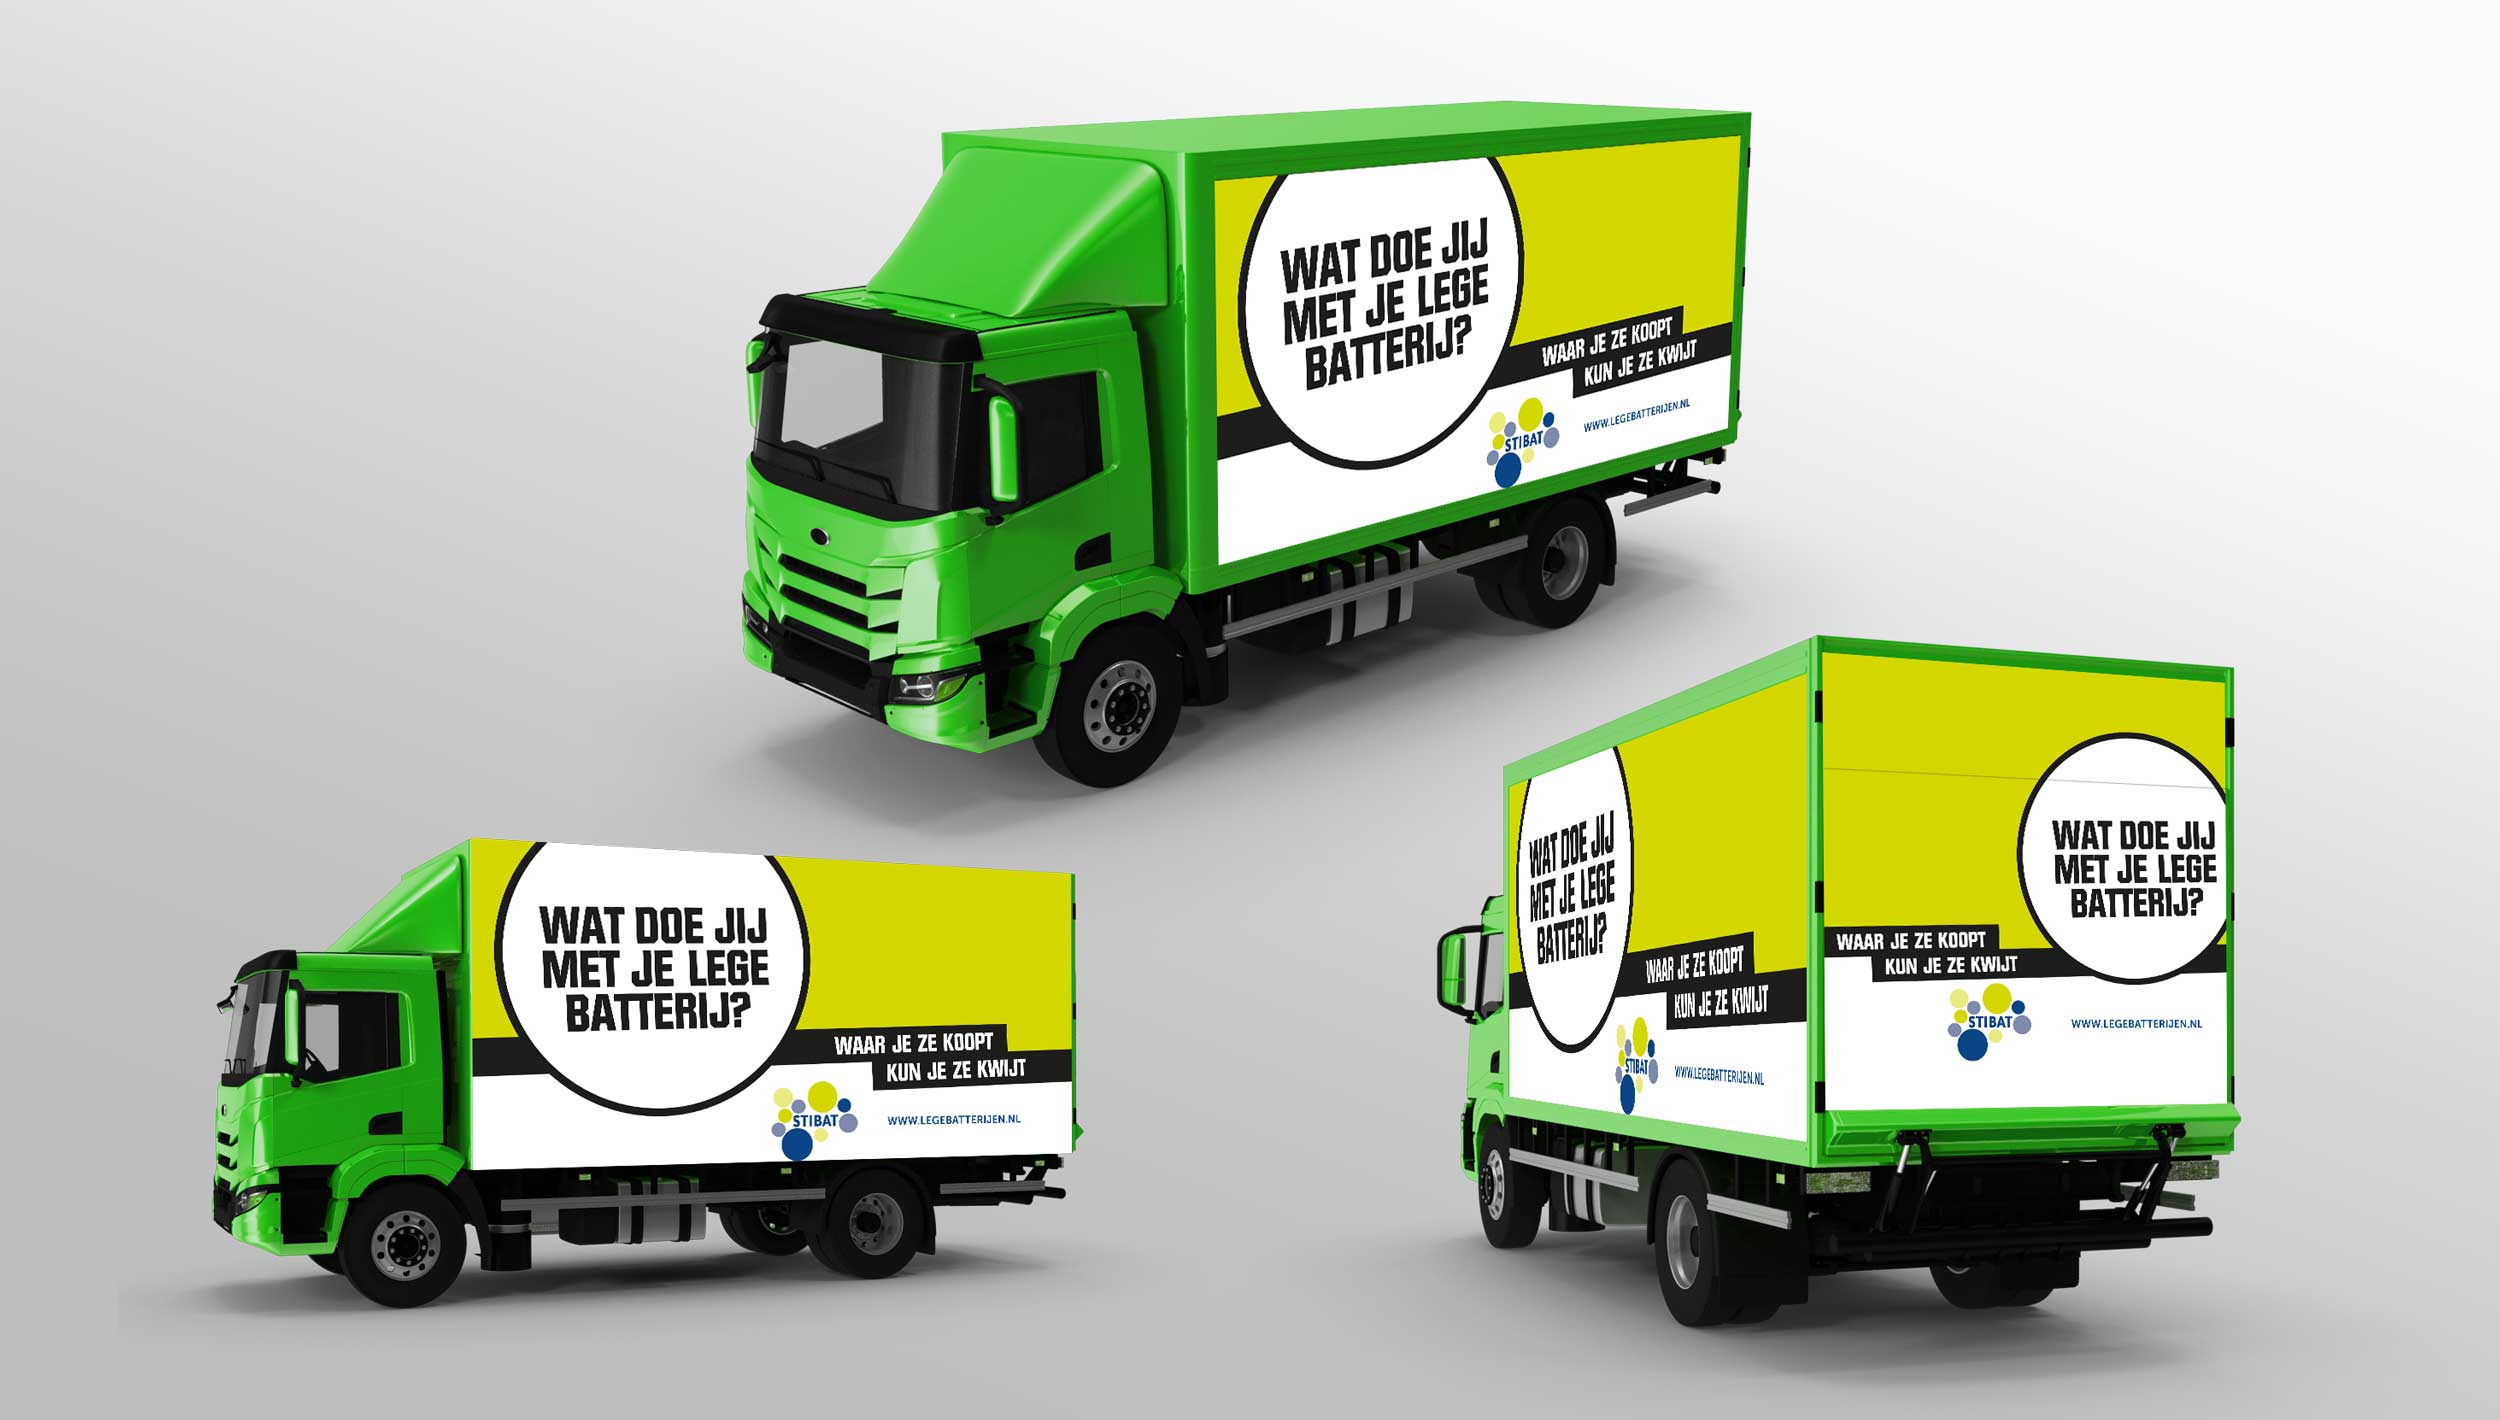 In Nederland rijden vrachtwagens van Stibat rond, met door de ons verzorgde landelijke campagne